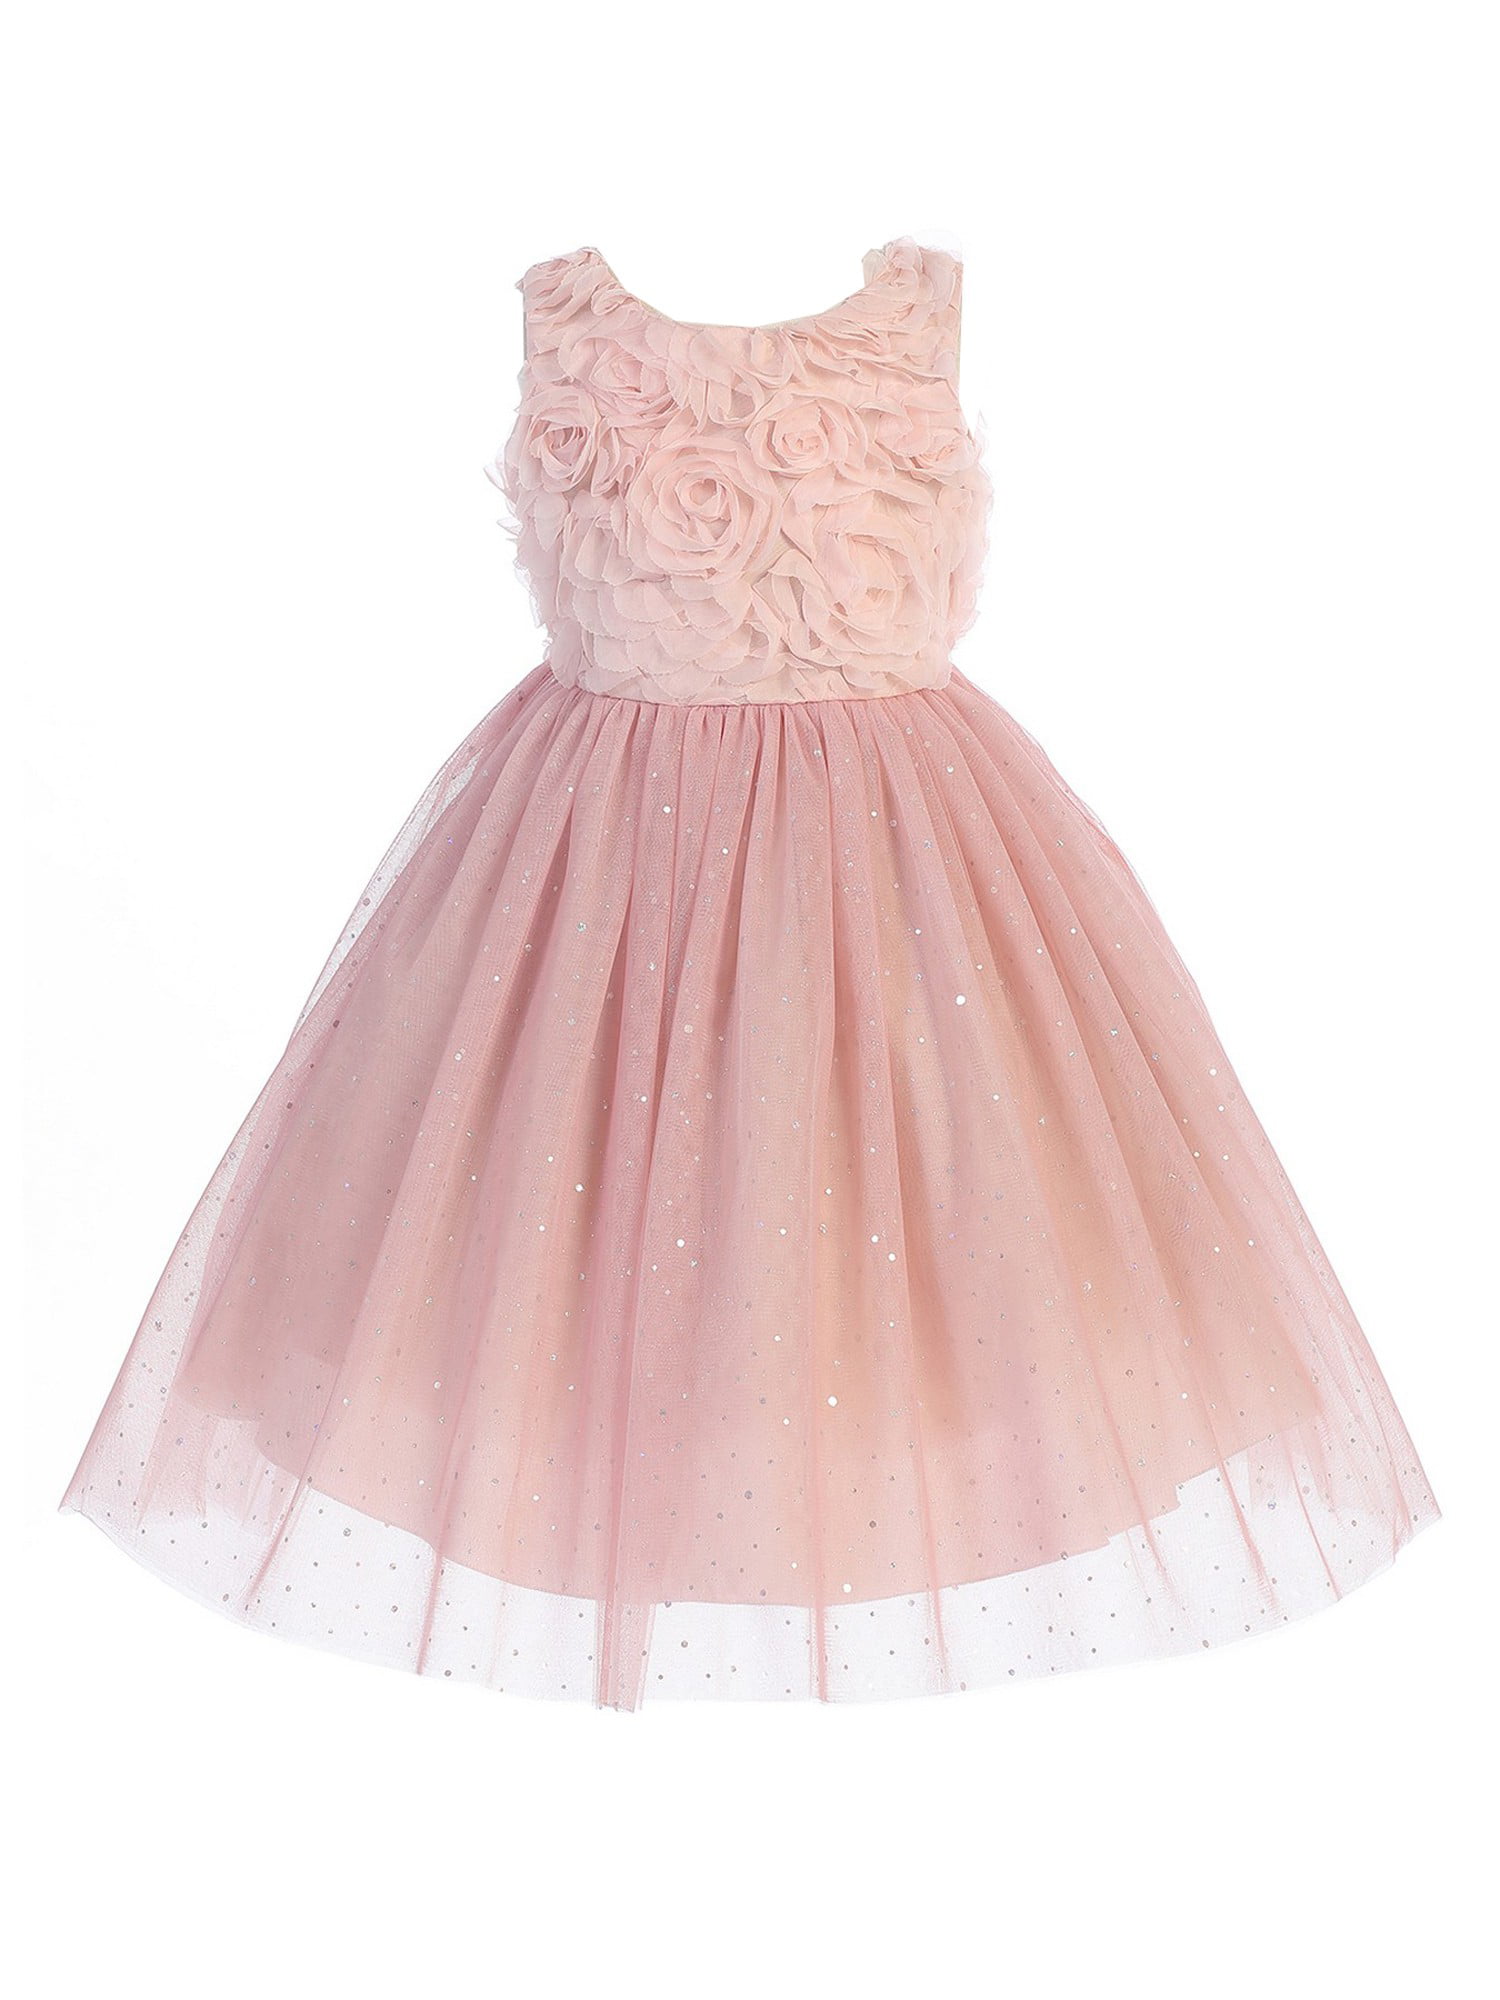 Shiny Toddler Little Girls Lace Ruffled Flower Girl Dress